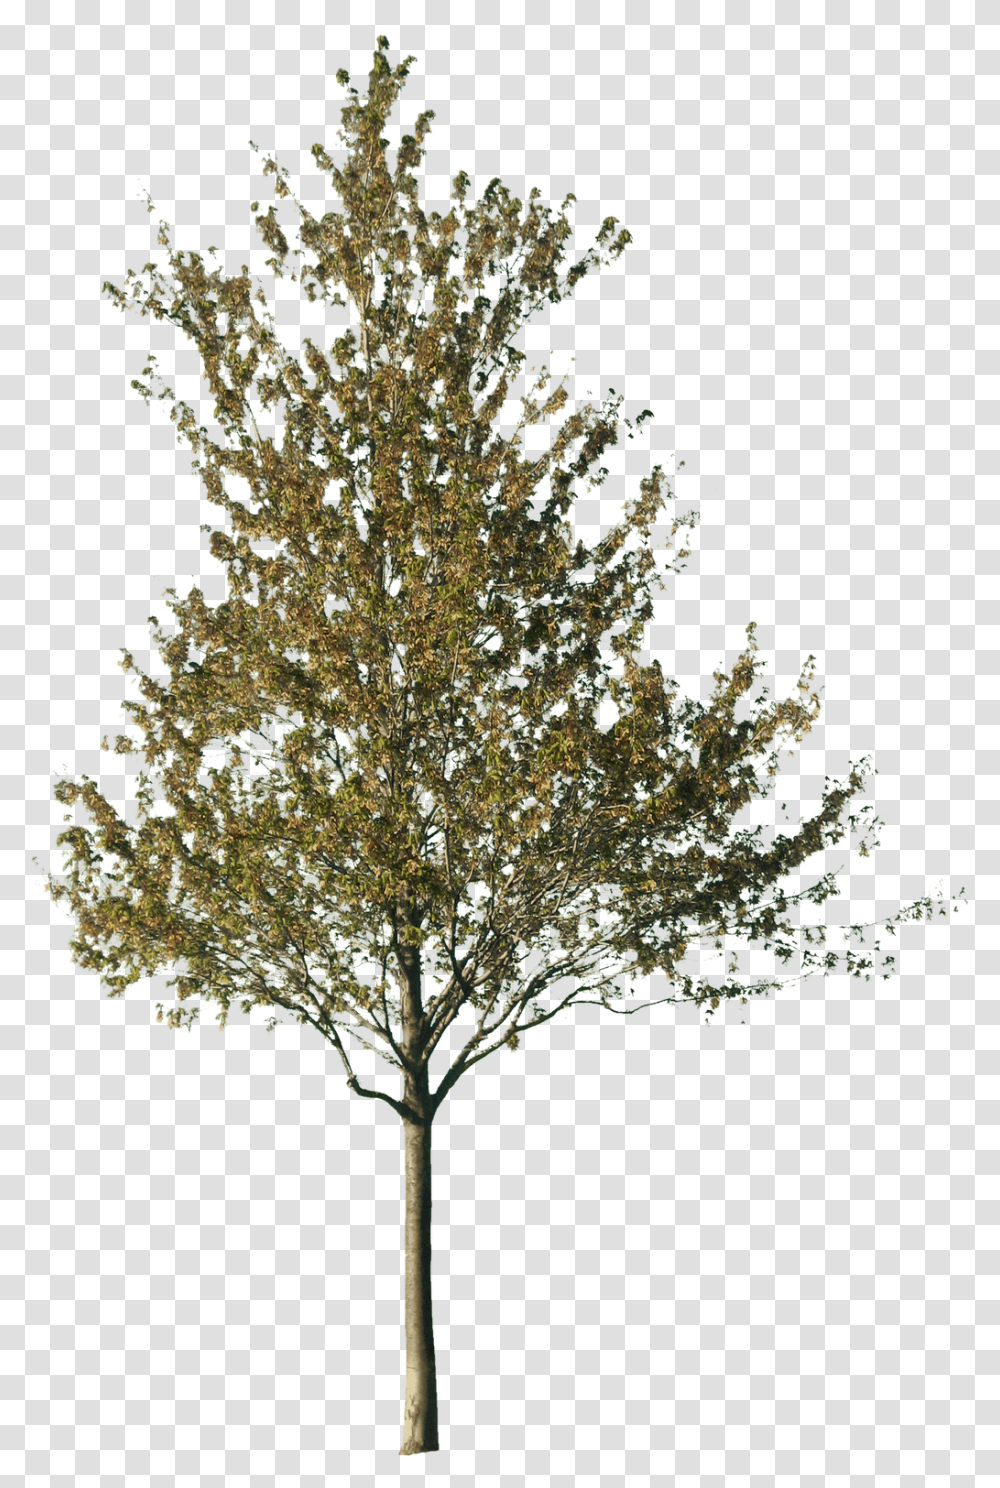 Tree Cut Out, Plant, Conifer, Fir, Abies Transparent Png